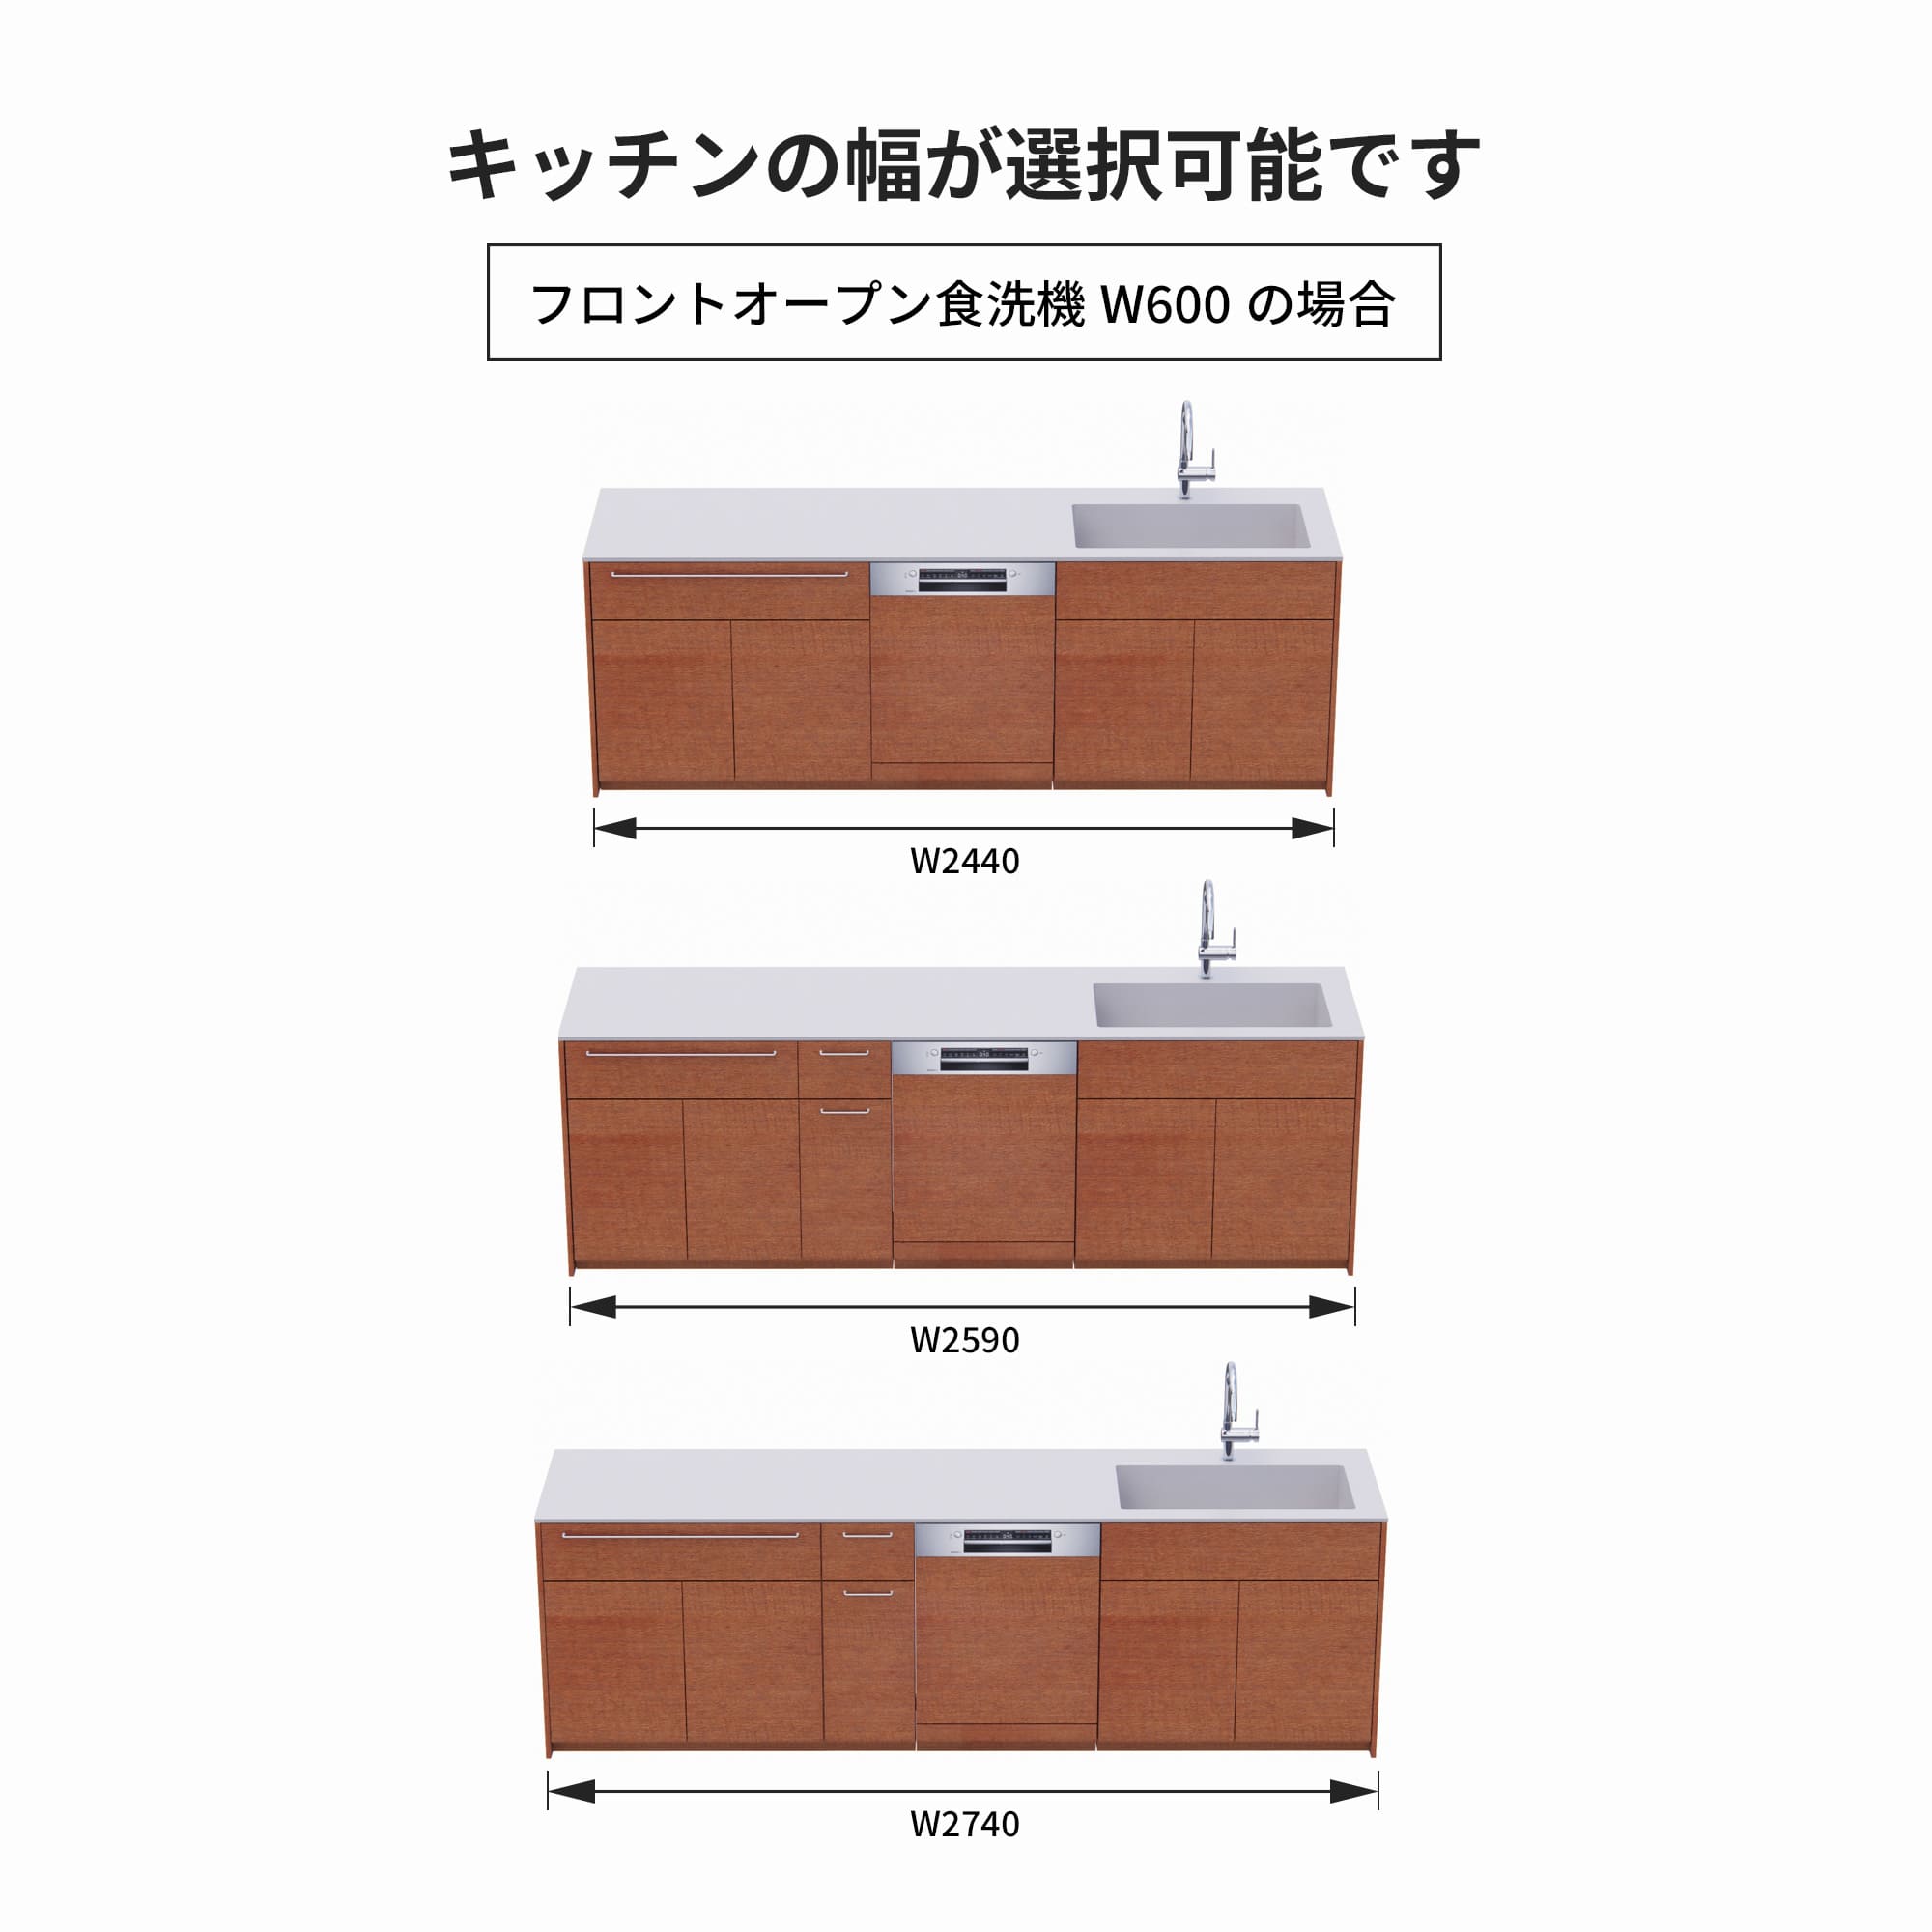 木製システムキッチン 対面型 W2440～2740・コンロなし / オーブンなし / 食洗機あり KB-KC022-45-G183 フロントオープン600の場合